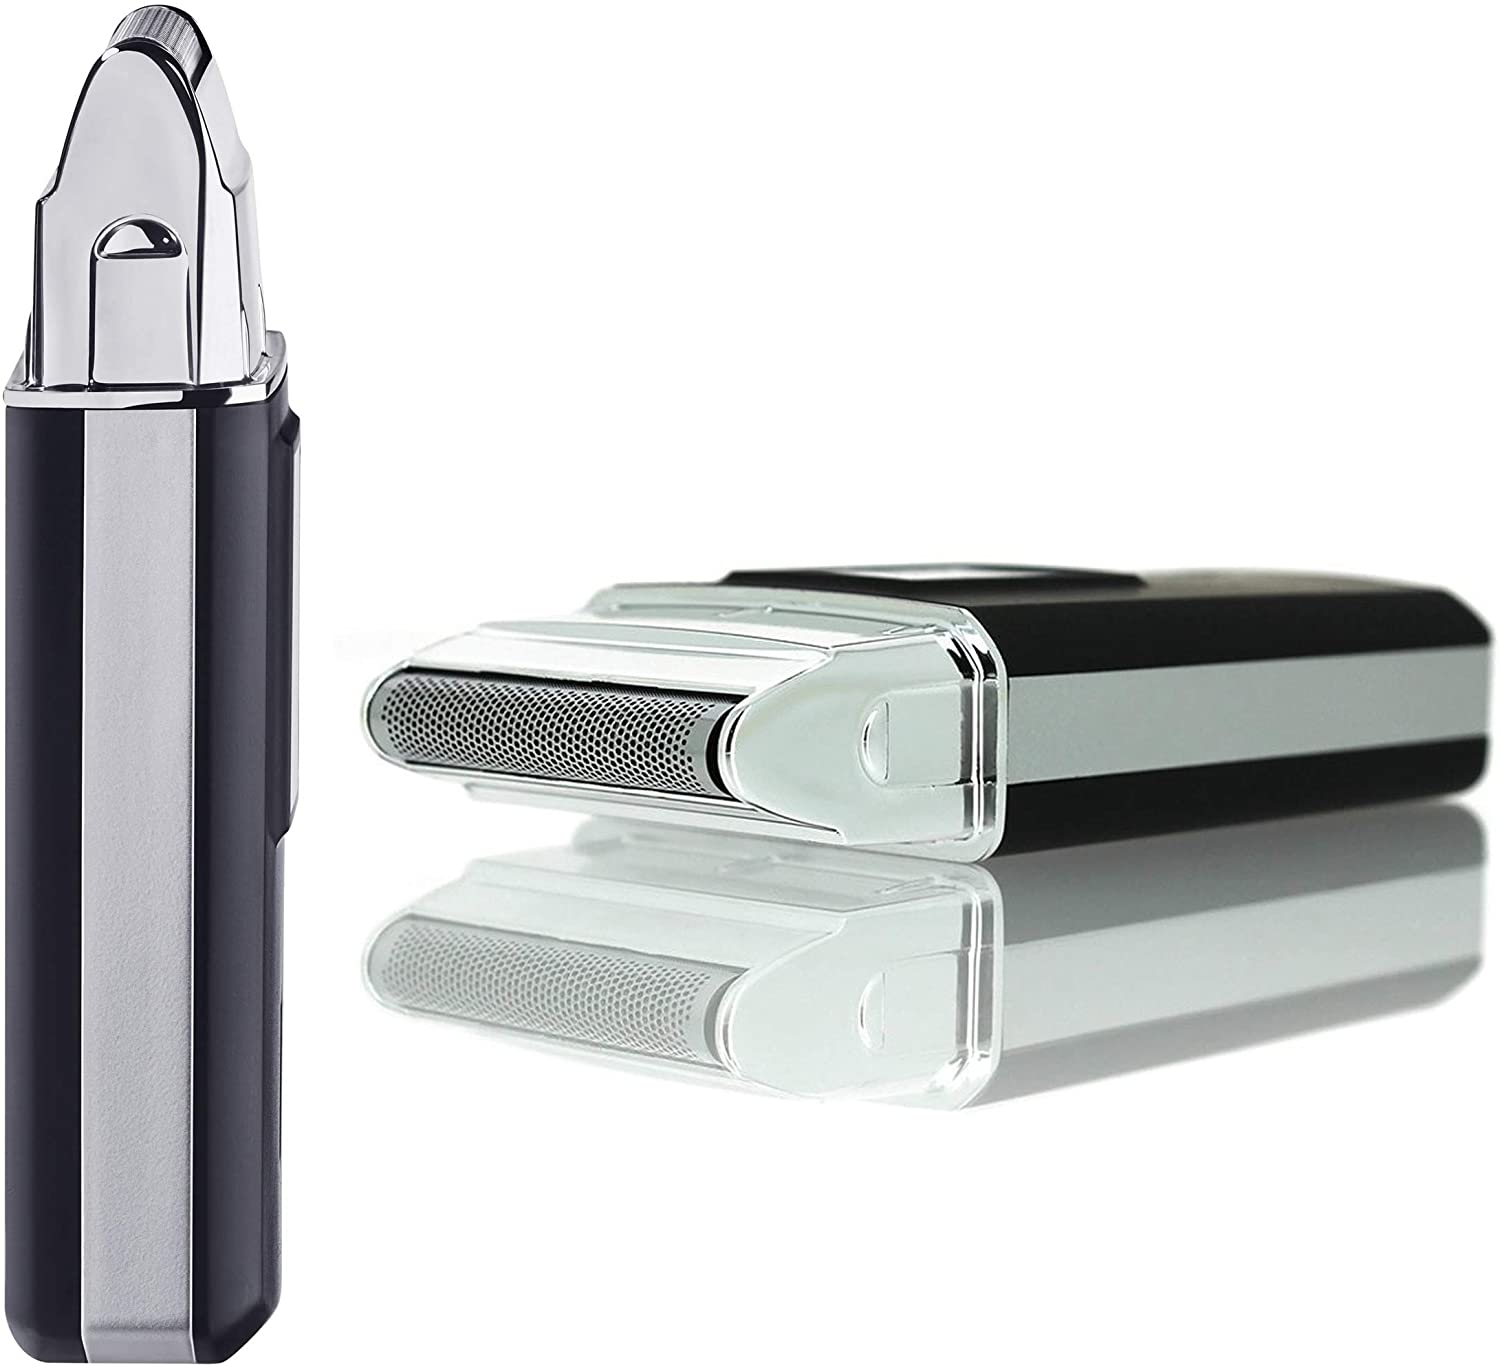 MOSER Mobile Shaver Cordless Shaver 3615-0052, Black/Silver